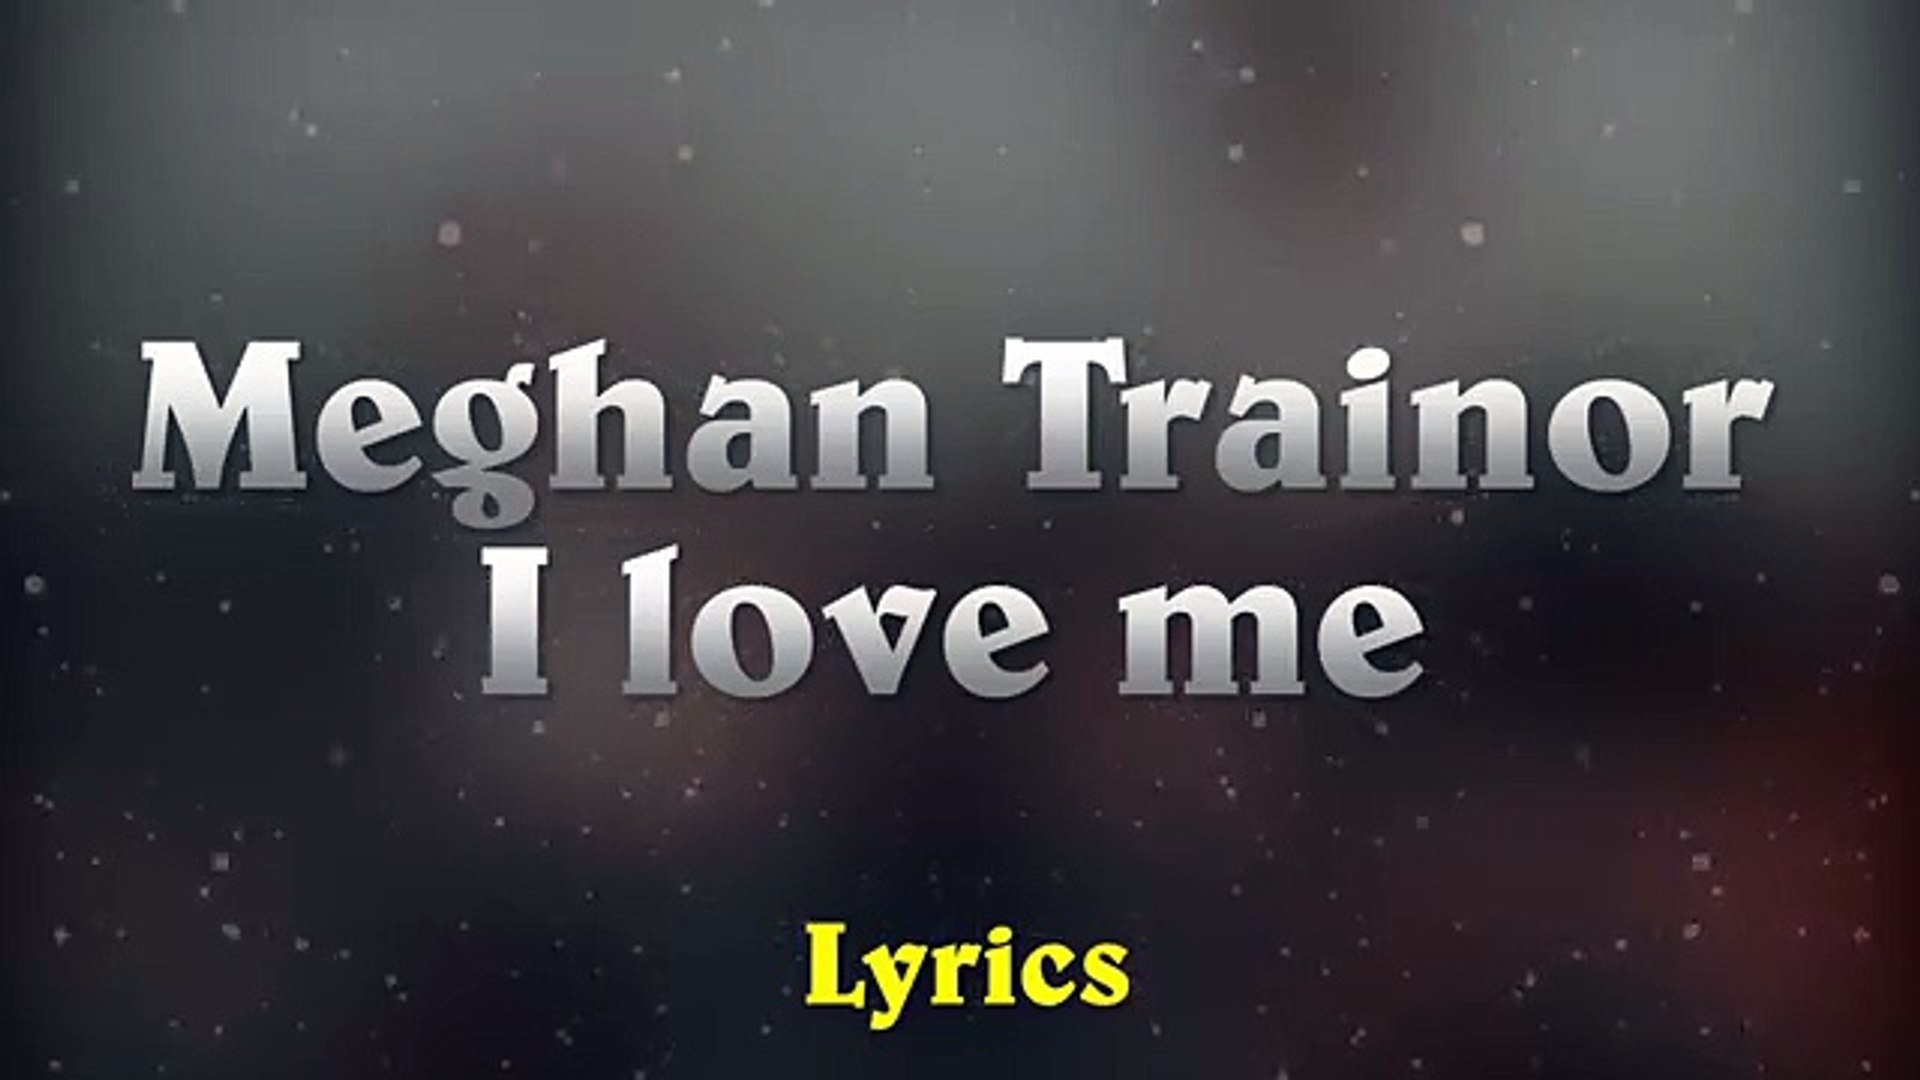 Meghan Trainor's Lyrics